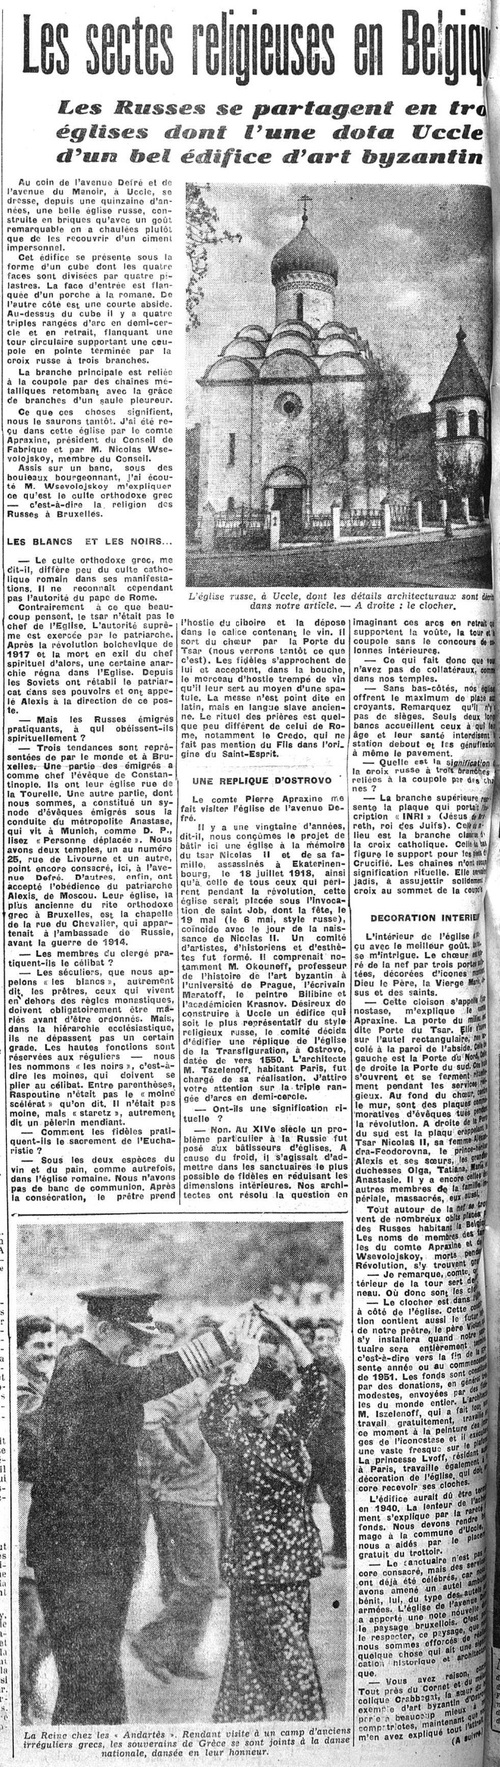 Les sectes religieuses en Belgique (La Lanterne, 9 mai 1950)(Belgicapress)